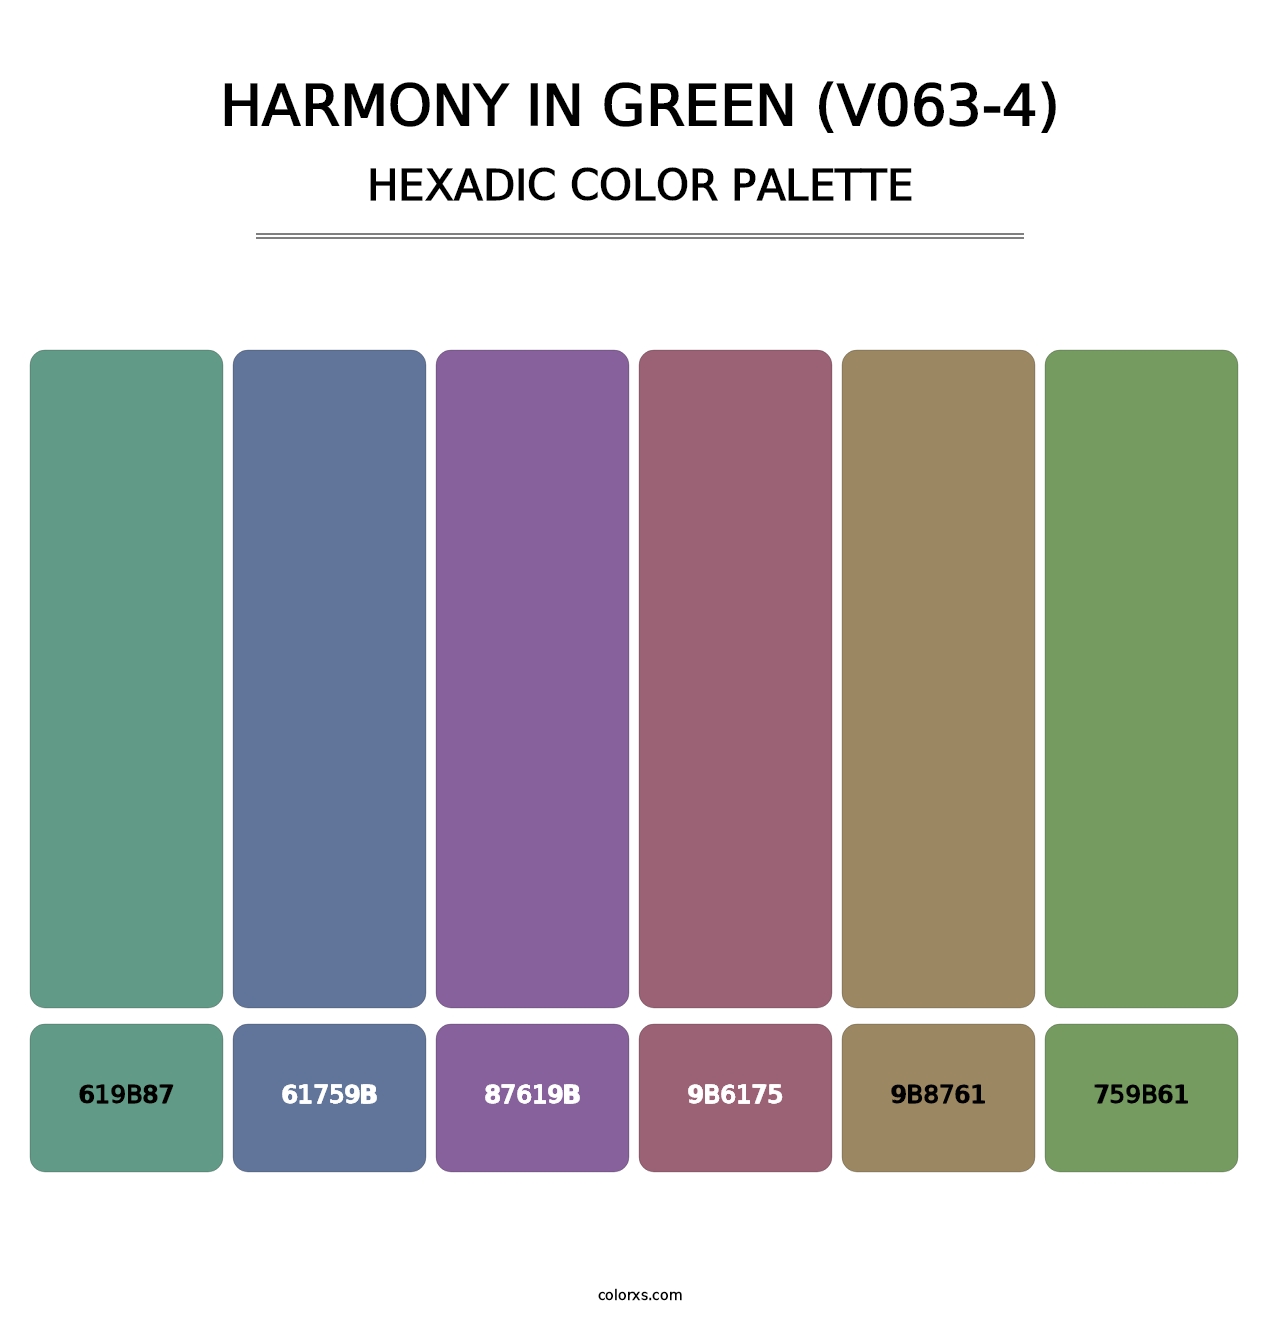 Harmony in Green (V063-4) - Hexadic Color Palette